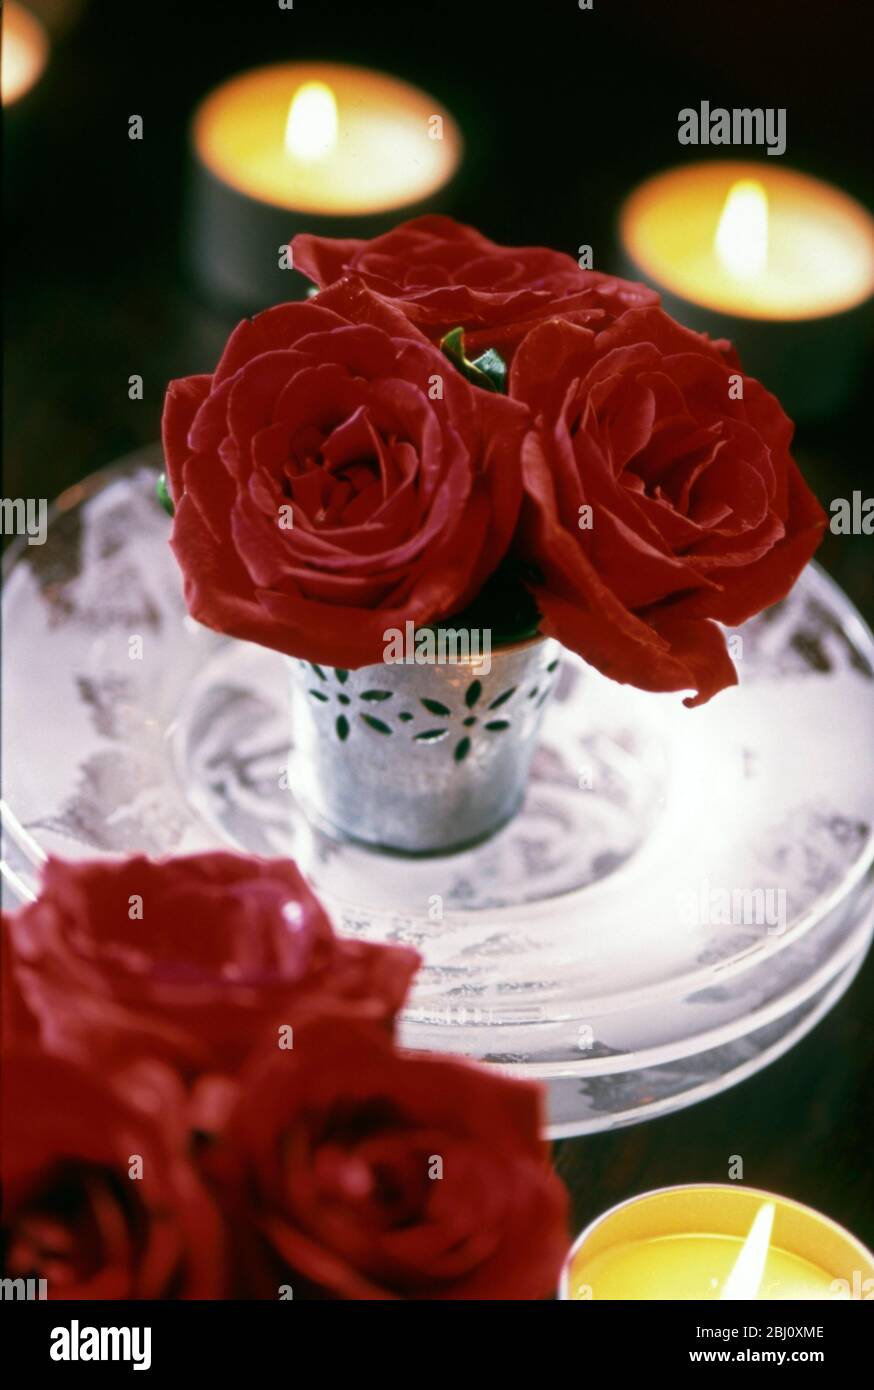 Drei rote Rosen in einem kleinen dekorativen Metalltopf auf drei rosigen Glasplatten mit Teelichtern um die Kerze. Weihnachtstisch Dekoration - Stockfoto